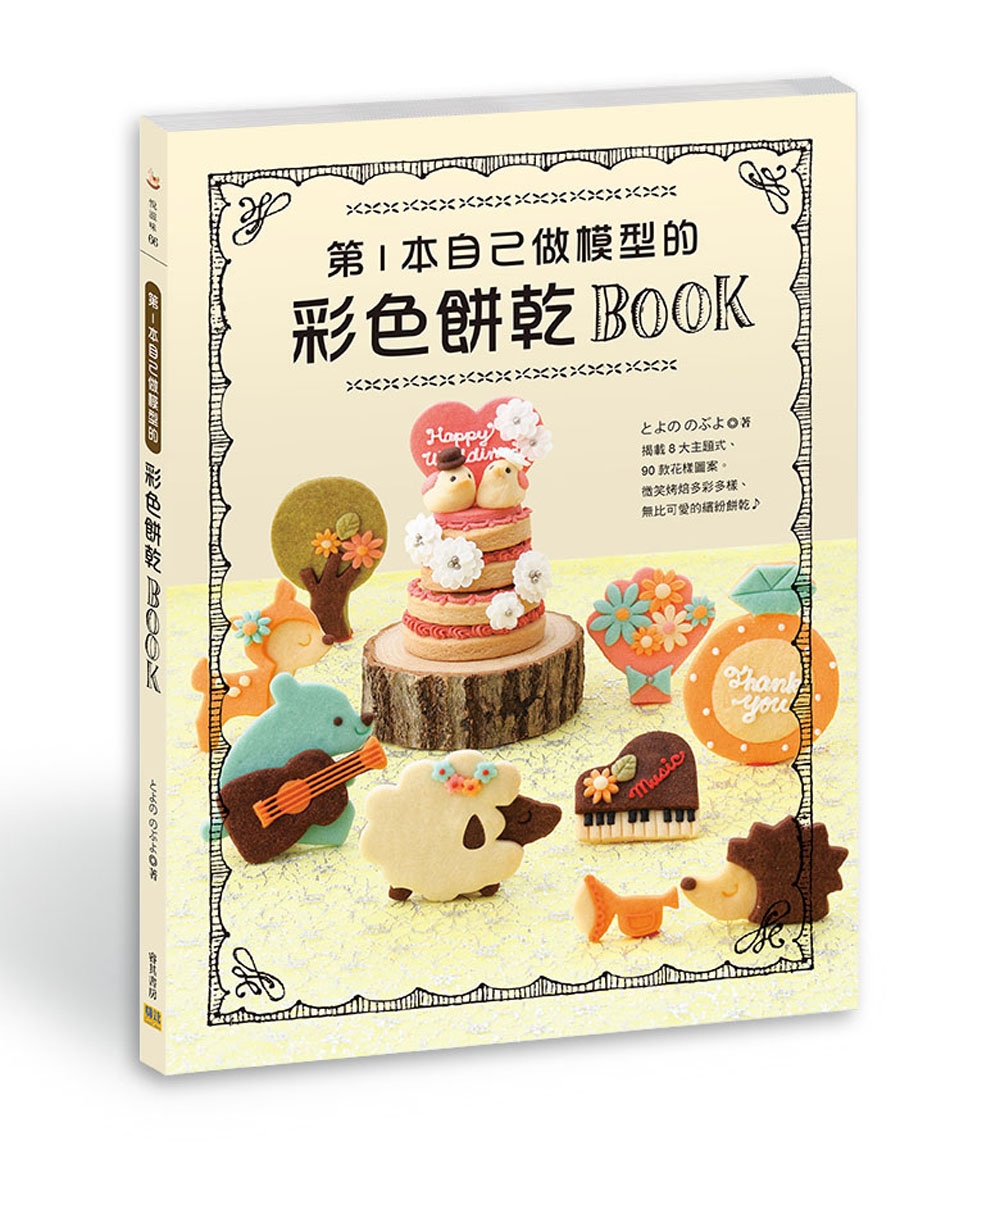 第1本自己做模型的彩色餅乾BOOK：揭載8大主題式、90款花樣圖案。微笑烤焙多彩多樣、無比可愛的繽紛餅乾?